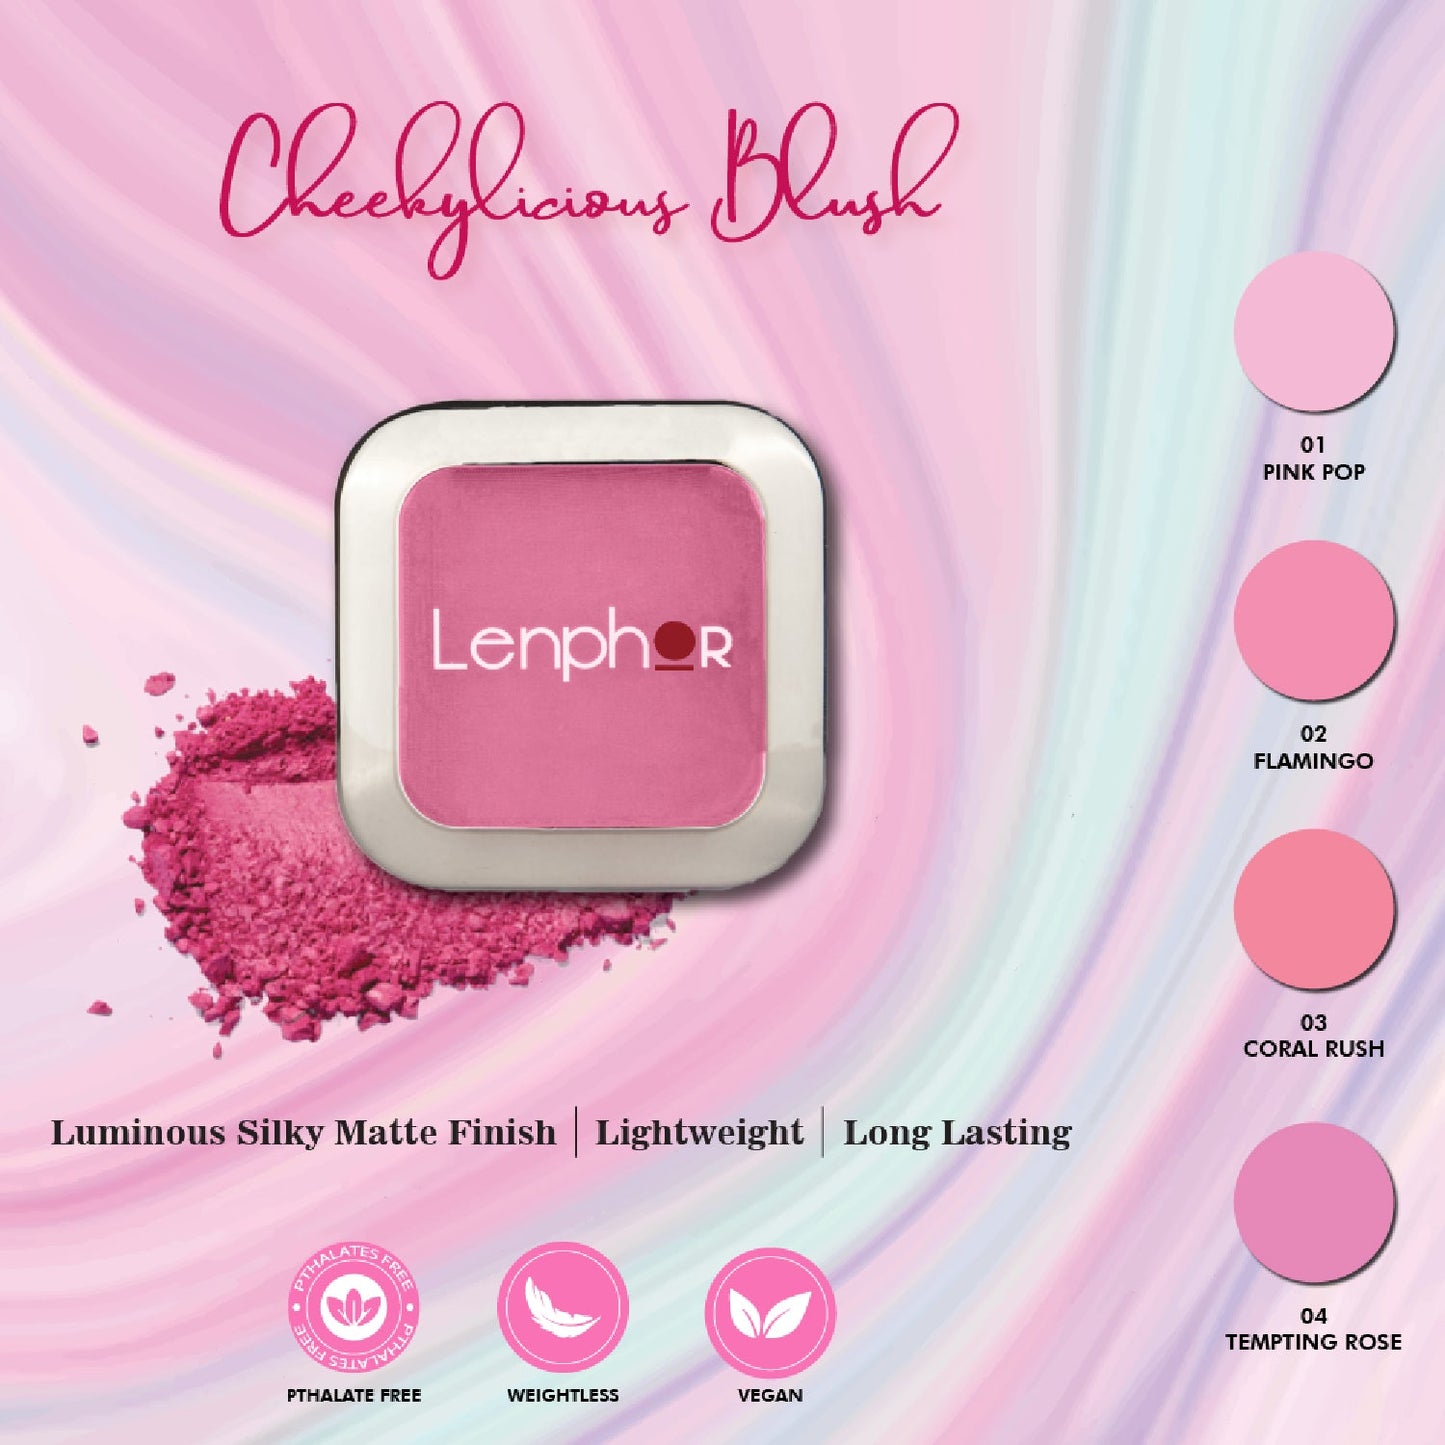 Shop Long Lasting Blush Makeup Powder in 4 Shades - Lenphor